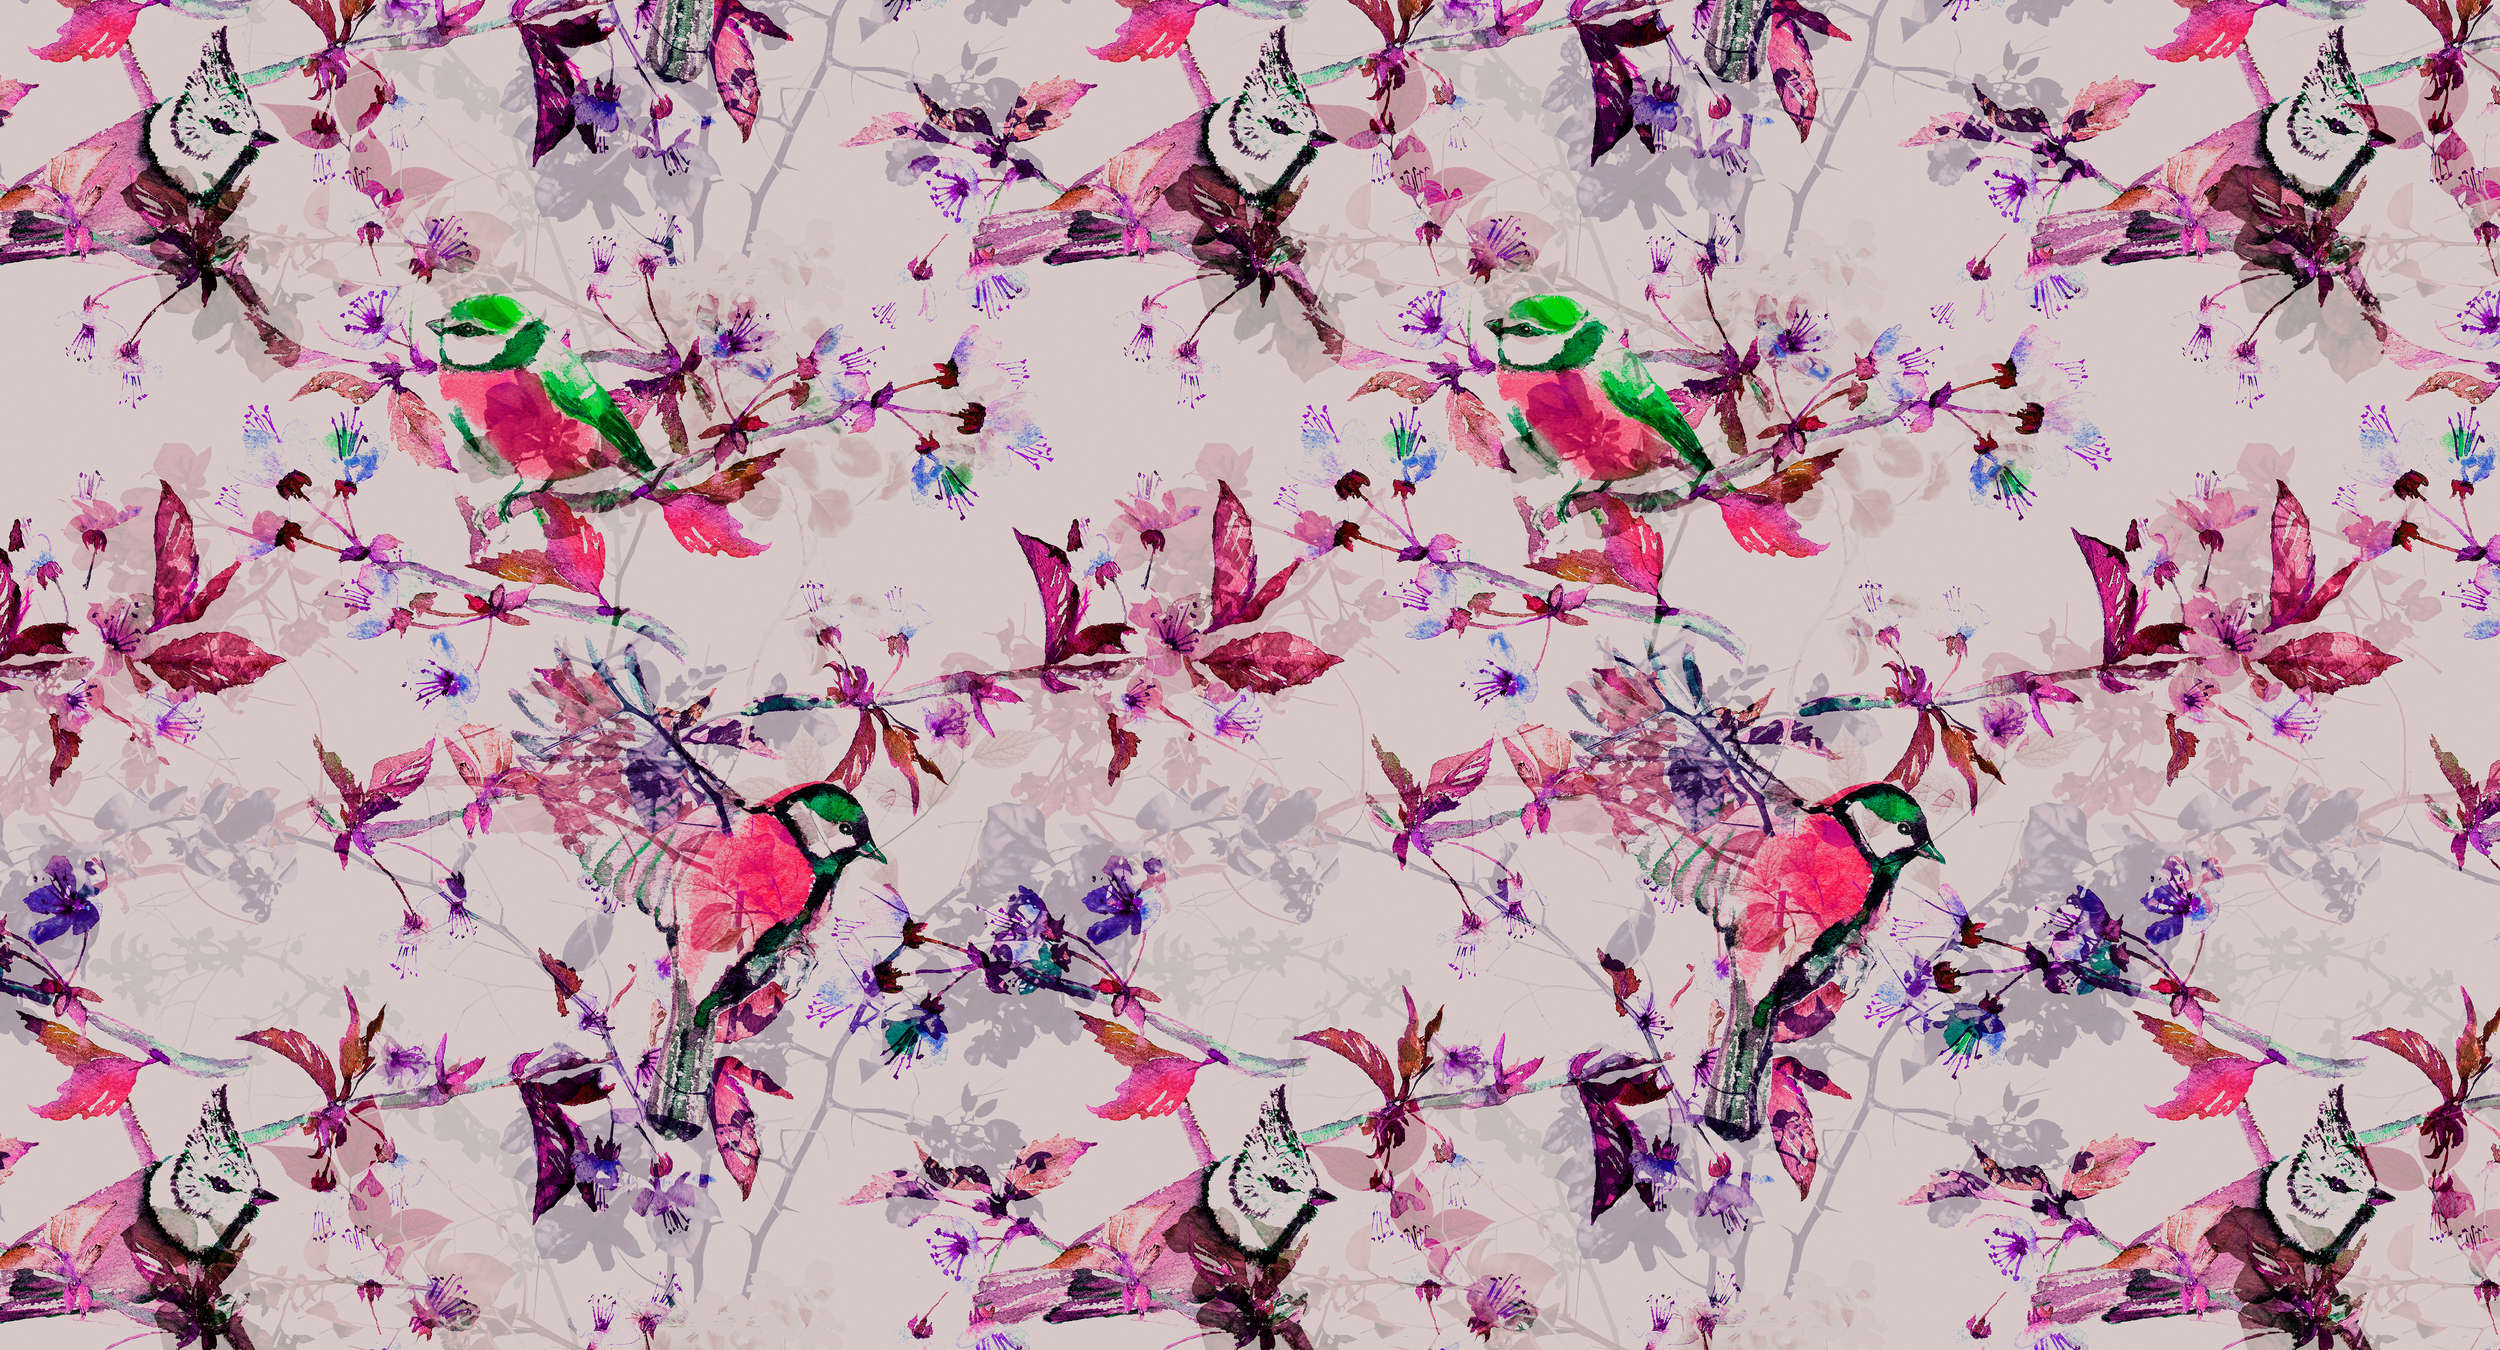             Papier peint oiseaux style collage - rose, bleu
        